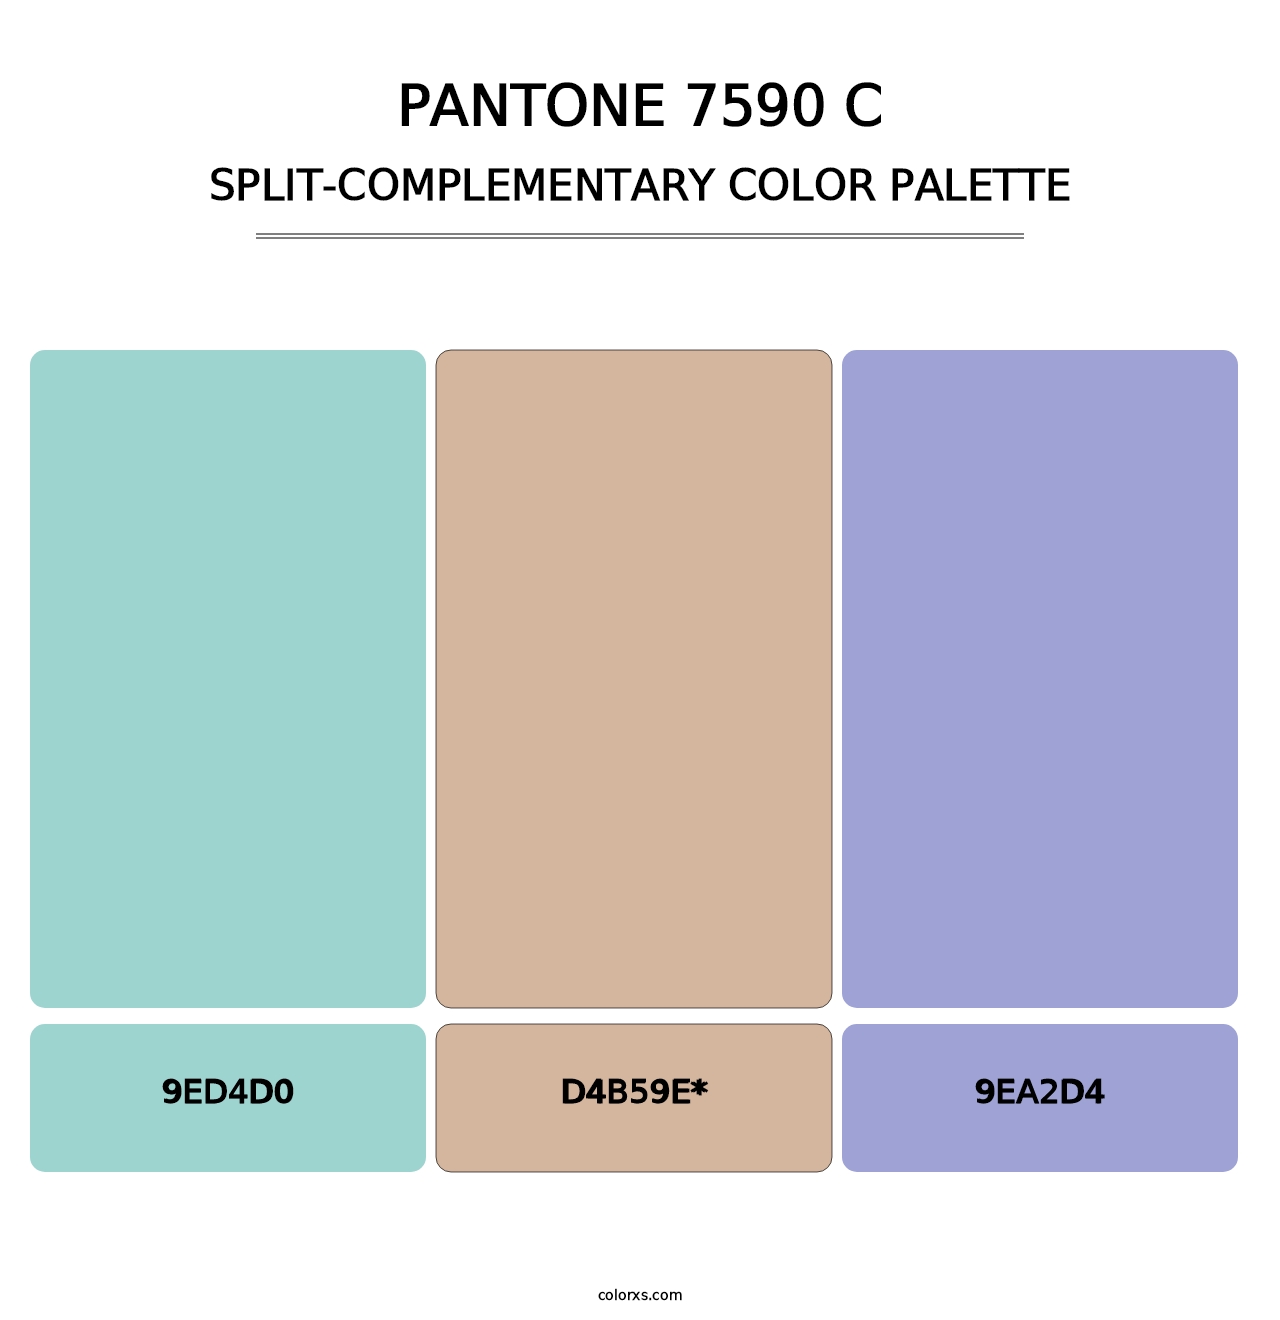 PANTONE 7590 C - Split-Complementary Color Palette